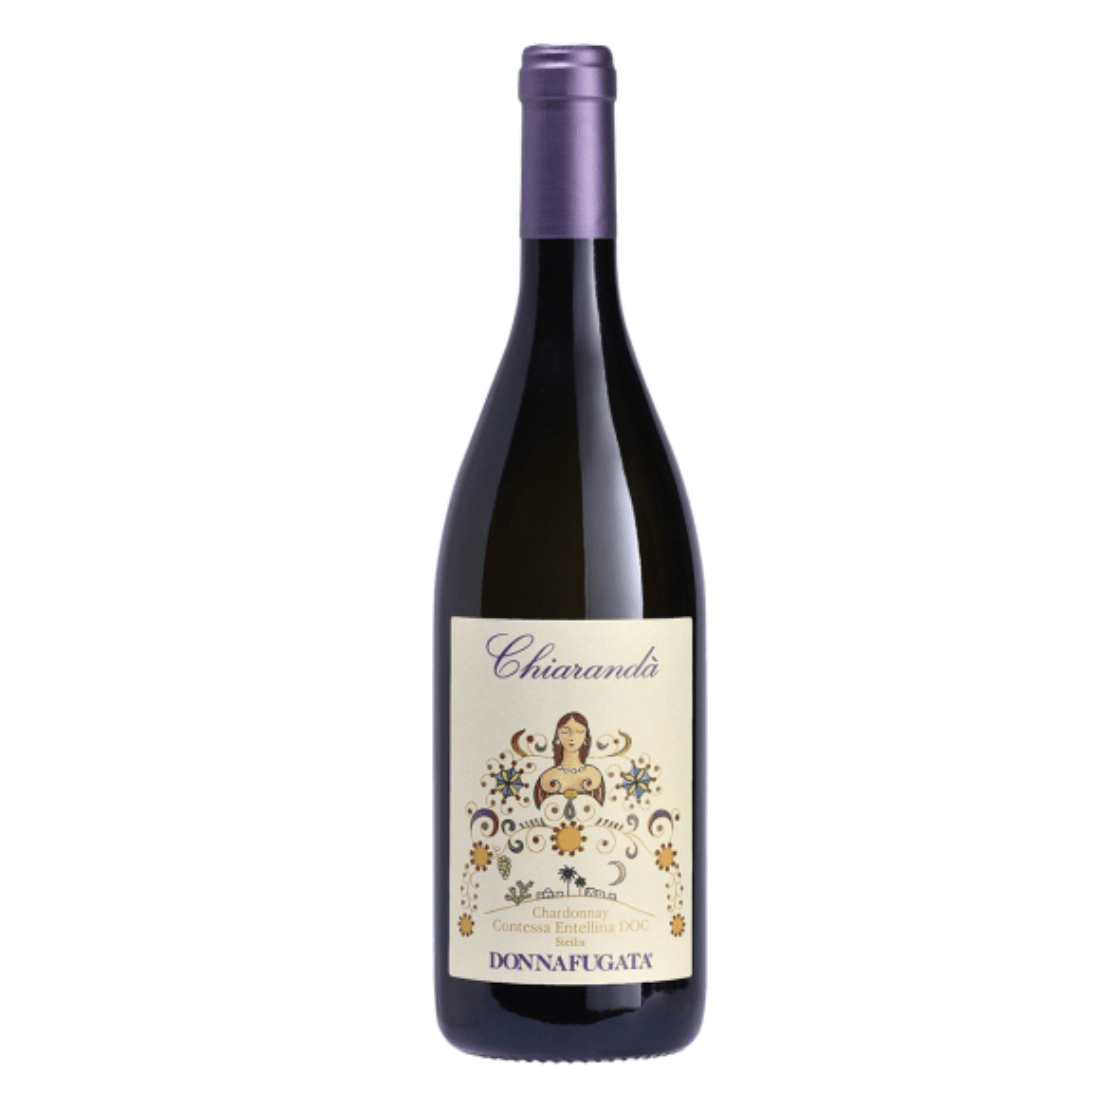 Chiarandà 2019 Doc Contessa Entellina Chardonnay - Donnafugata-Vinolog24.com